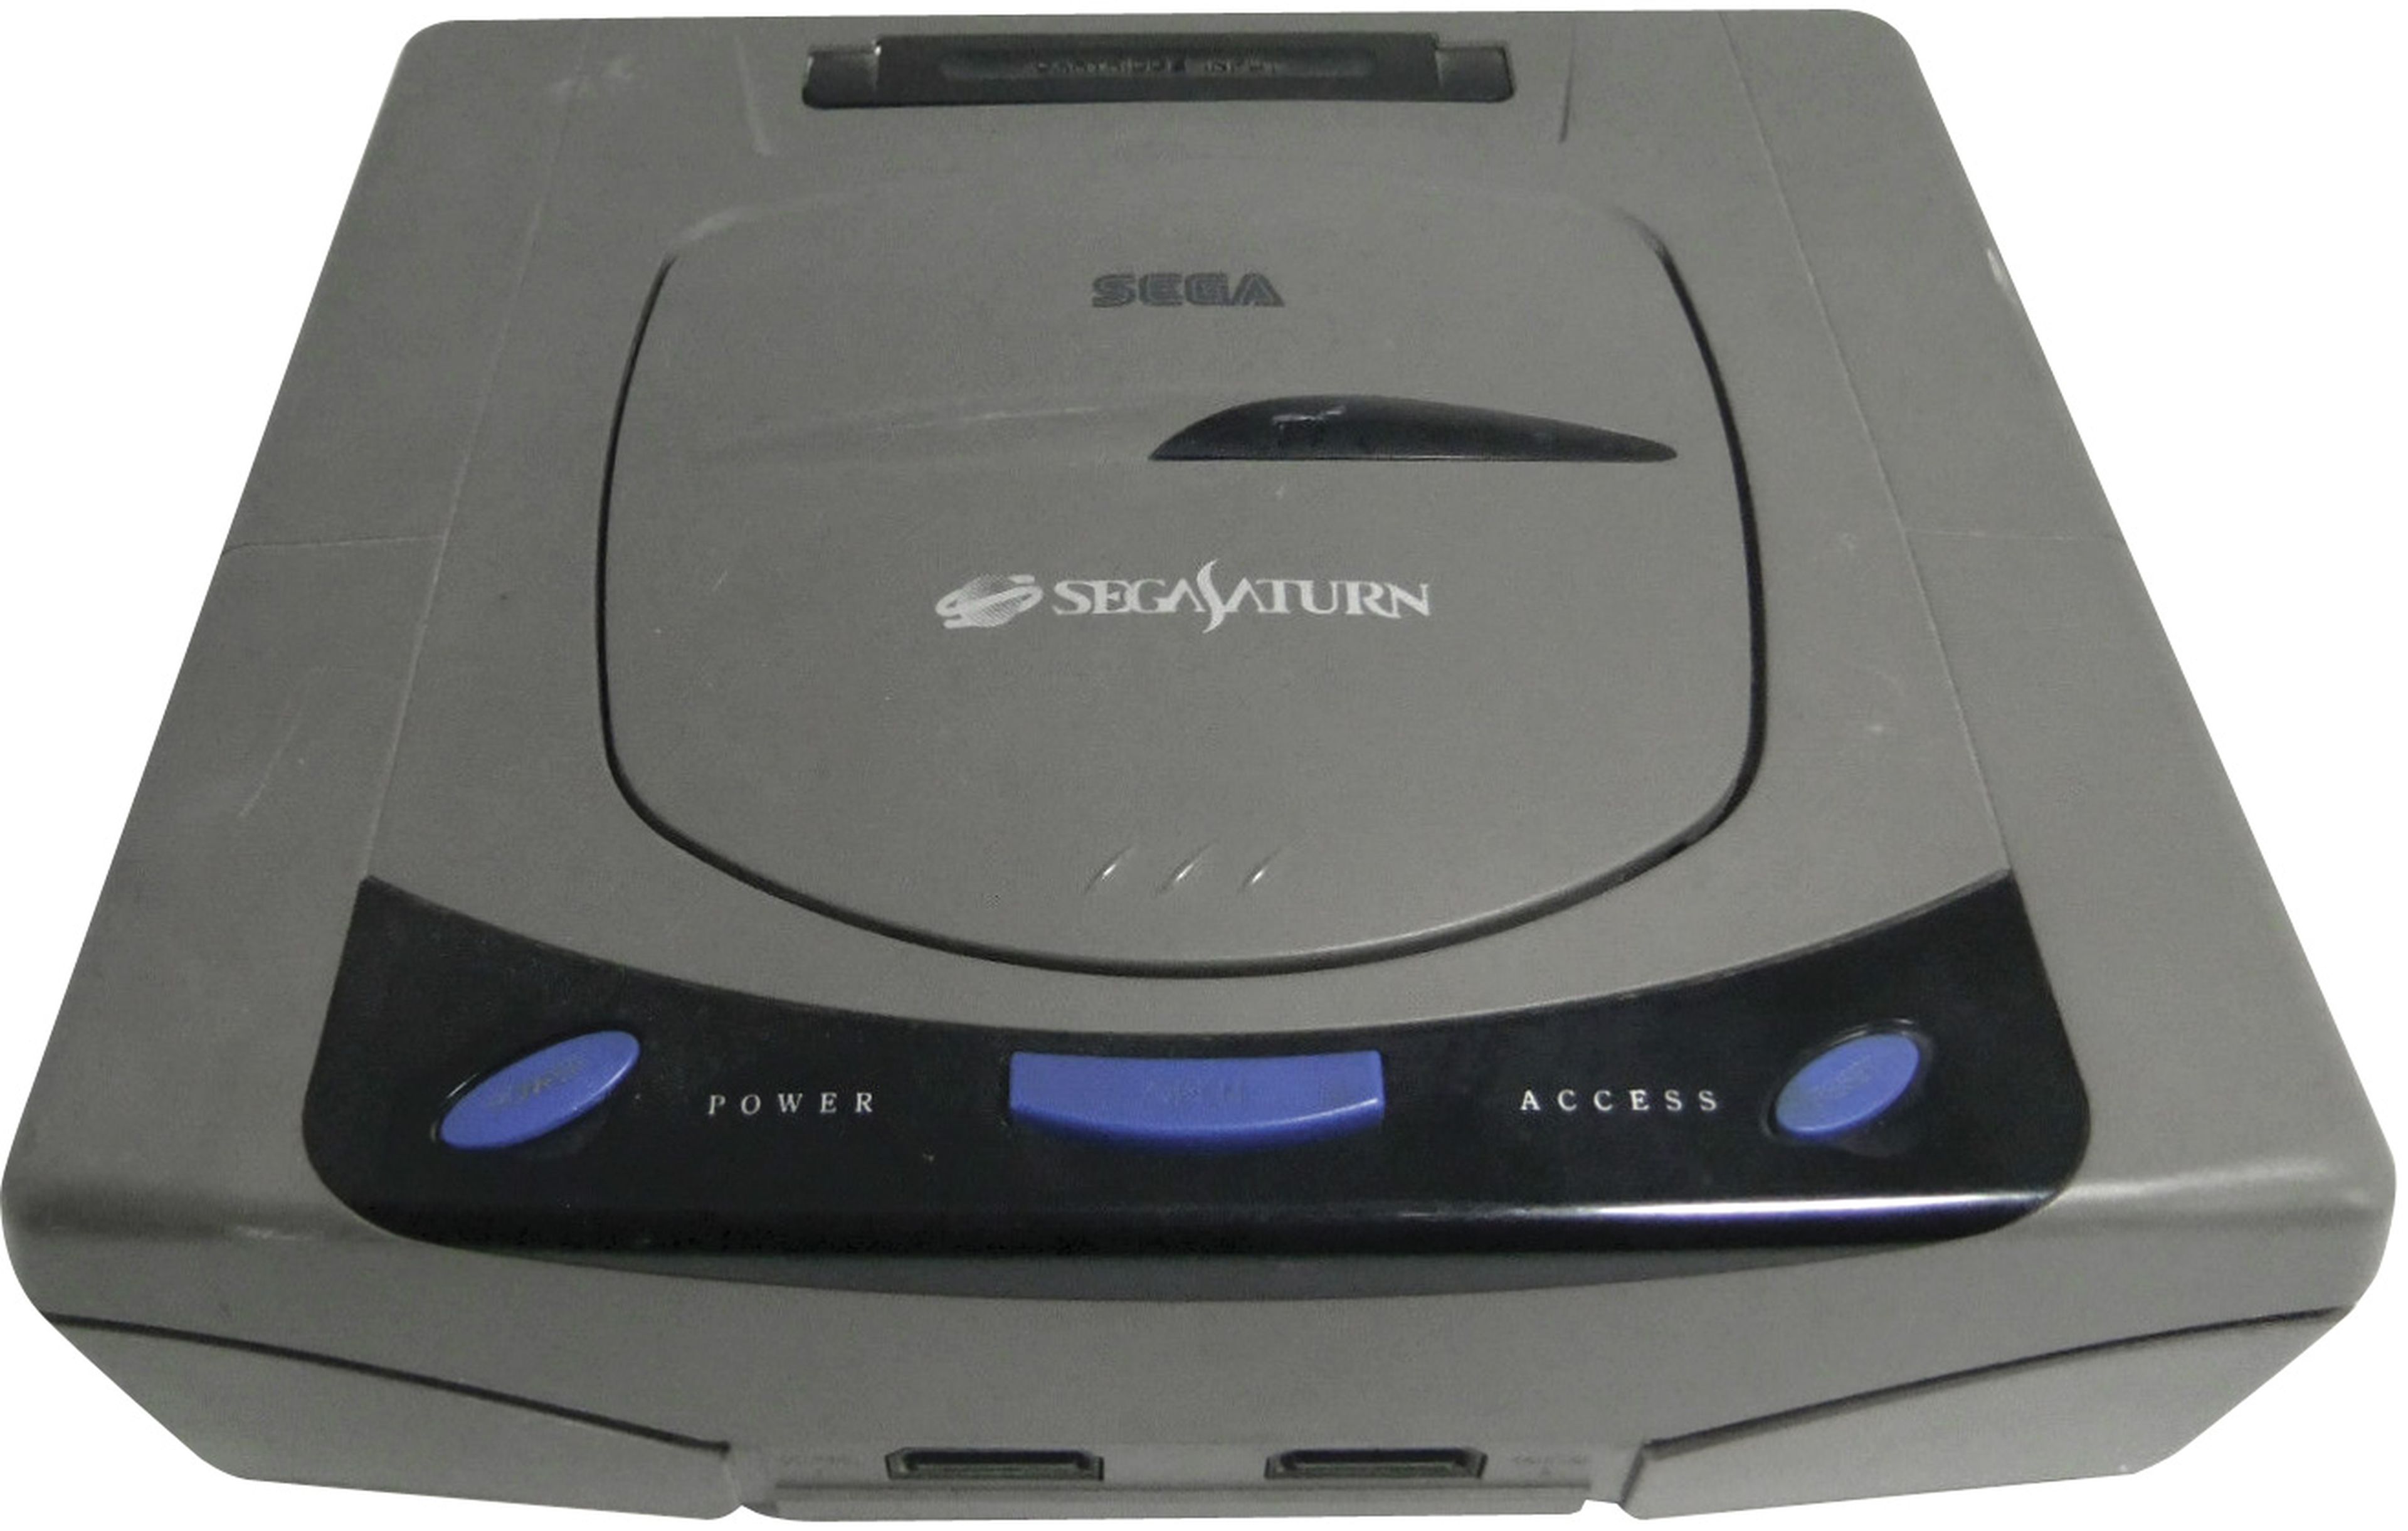 Las Sega Saturn Japonesas lucían este gris característico